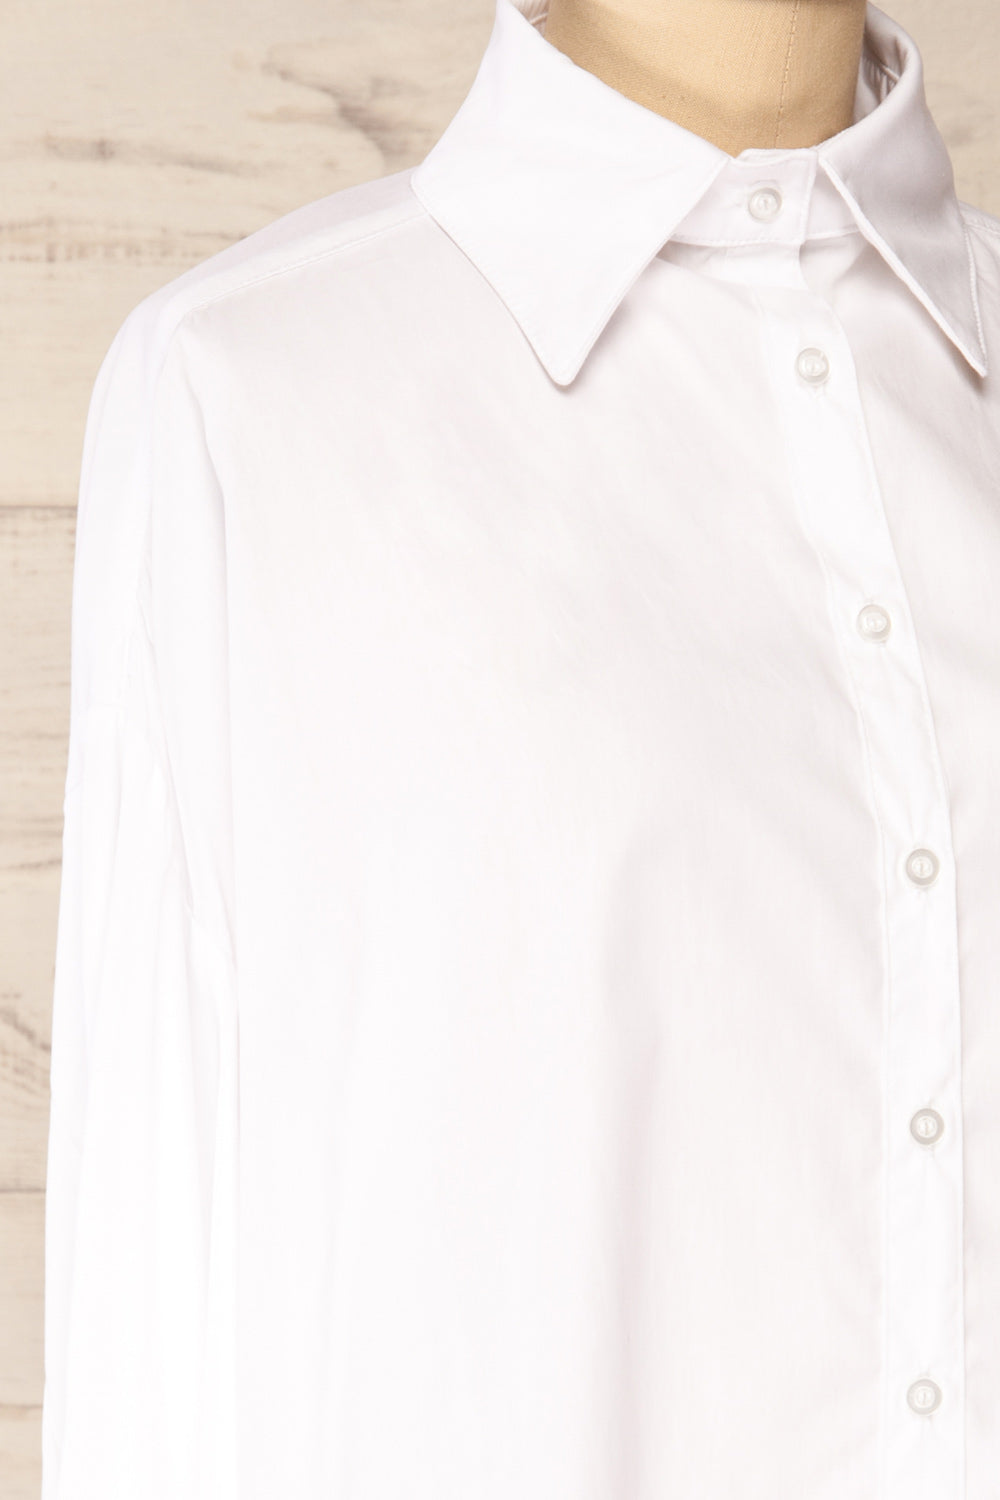 Blairr White Long Sleeve Button-Up Shirt | La petite garçonne side close-up